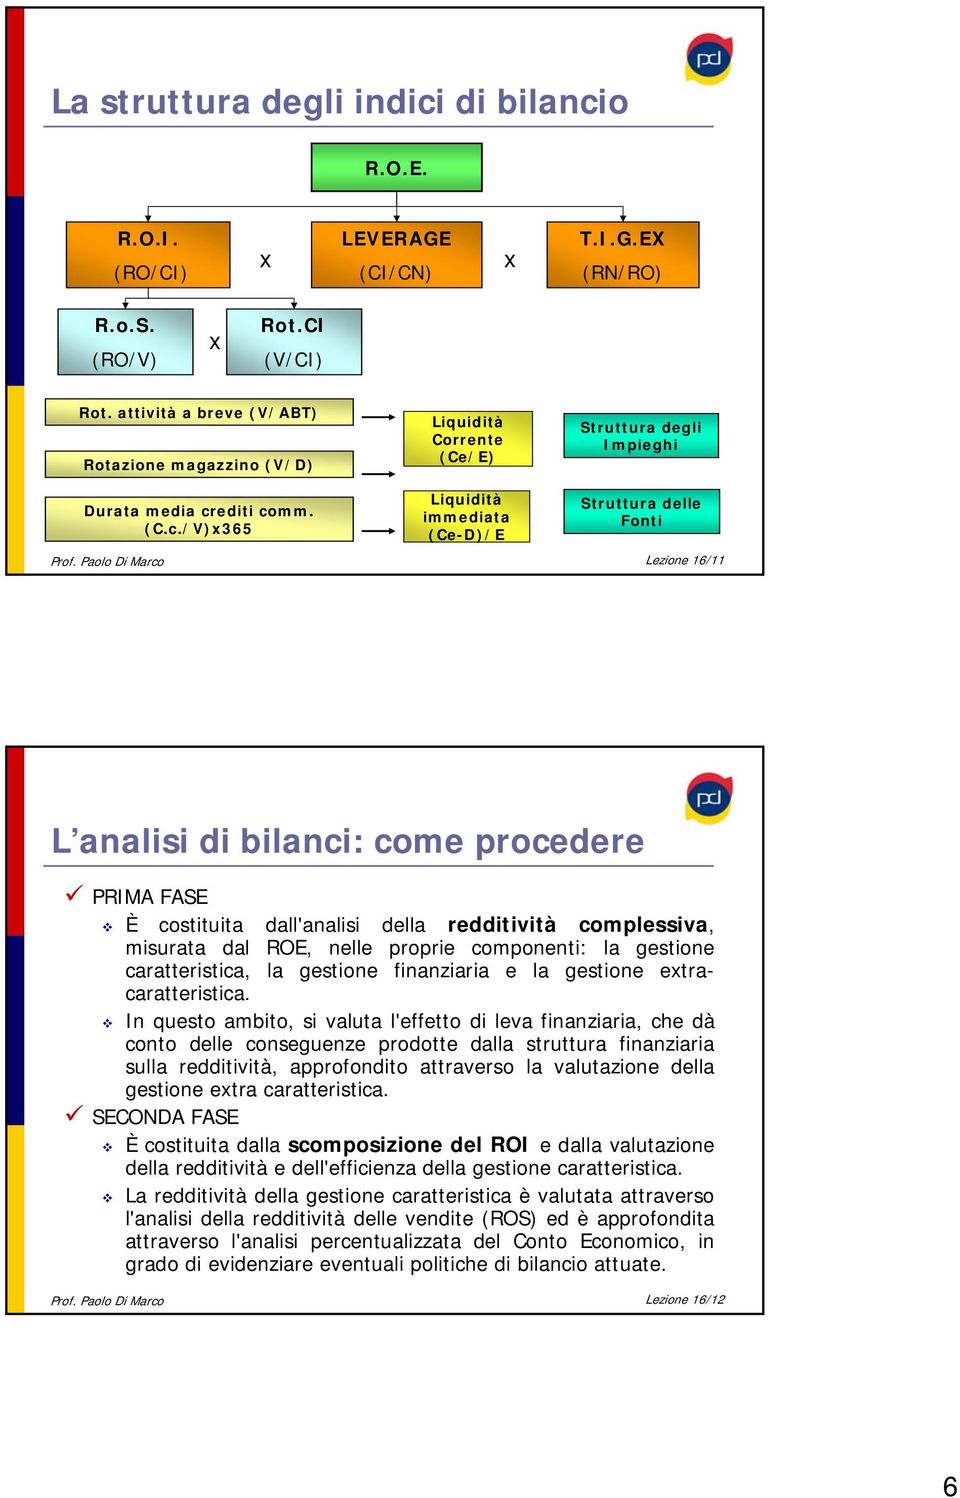 Paolo Di Marco Lezione 16/11 L analisi di bilanci: come procedere PRIMA FASE È costituita dall'analisi della redditività complessiva, misurata dal ROE, nelle proprie componenti: la gestione